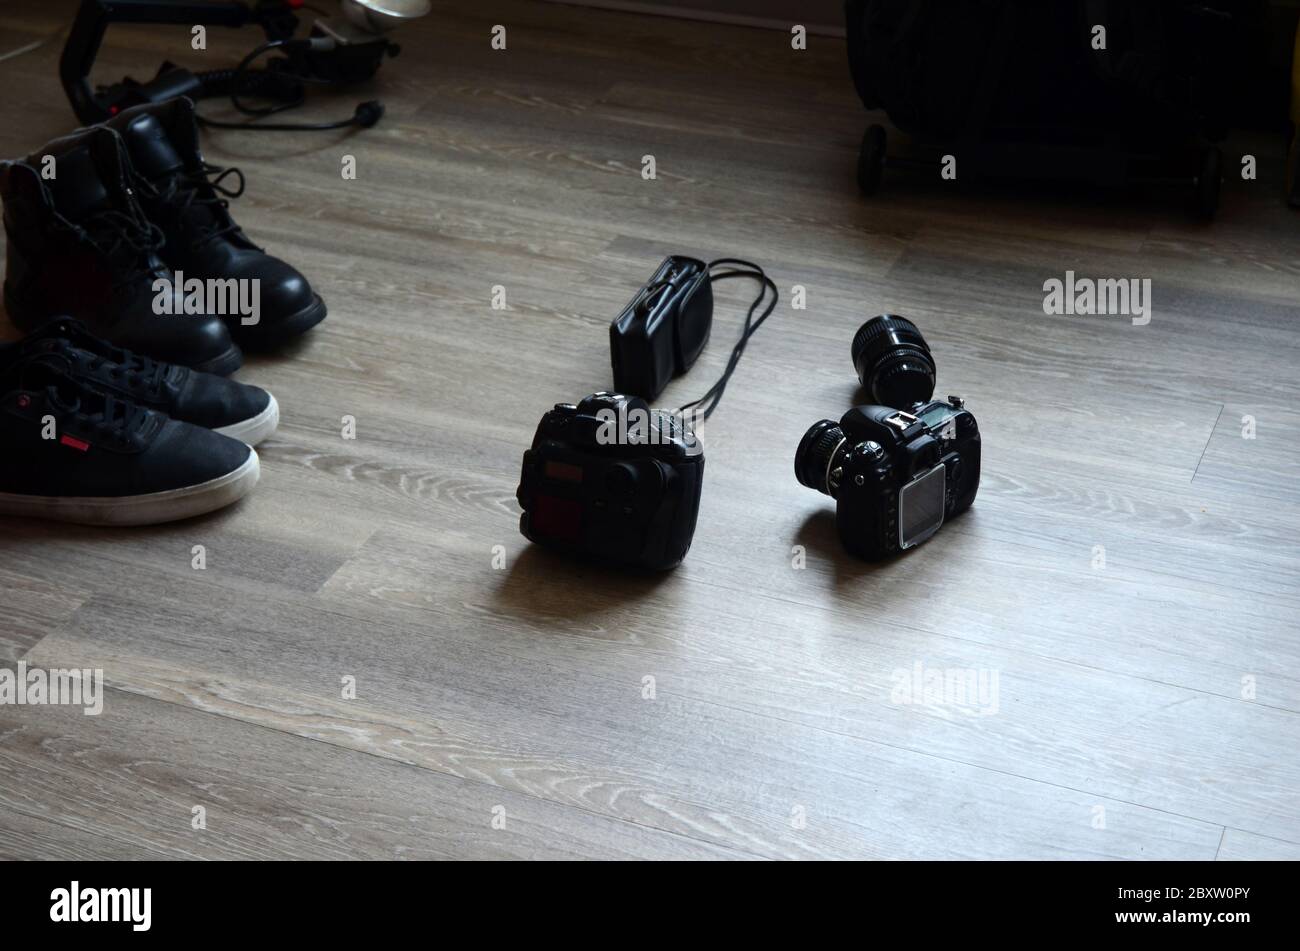 FOTOSHOOTING: Fotoausrüstung sitzt auf dem Boden einer Wohnung. Stockfoto